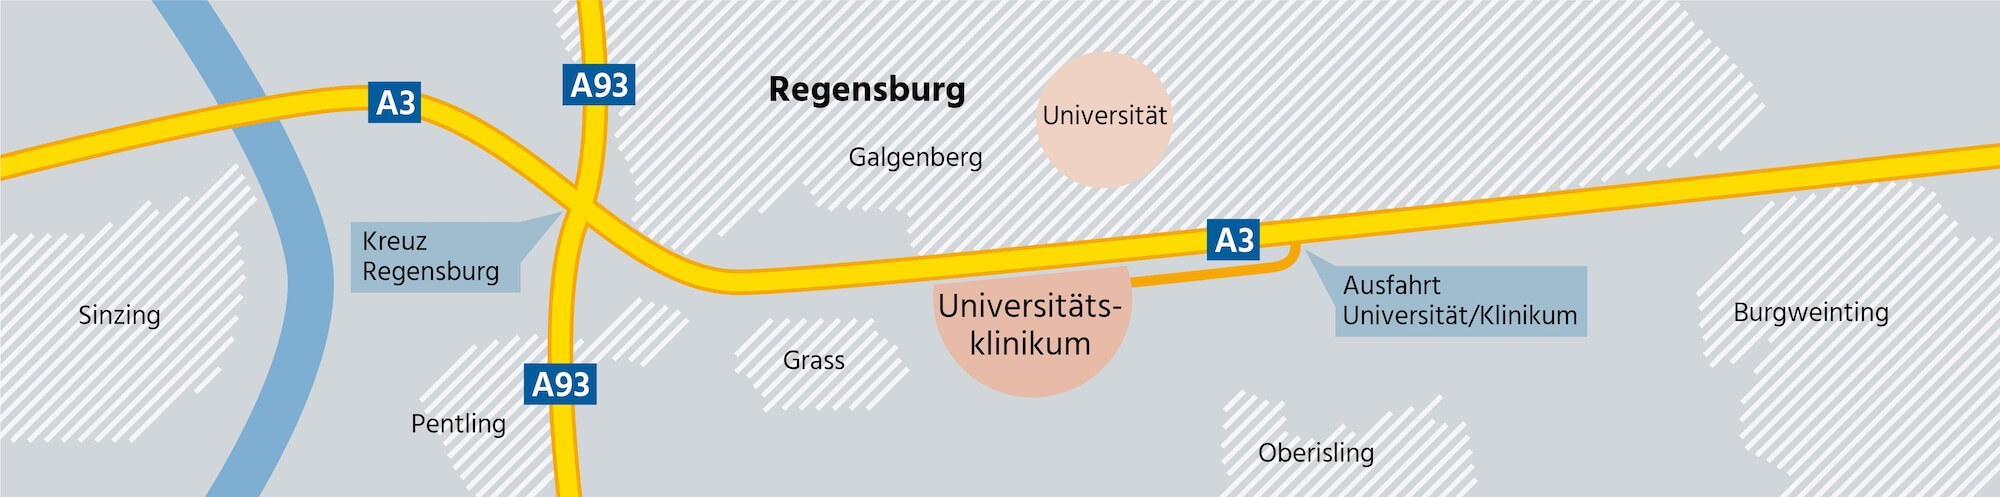 Anfahrt humangenetische Sprechstunde Schönbuchner in Regensburg